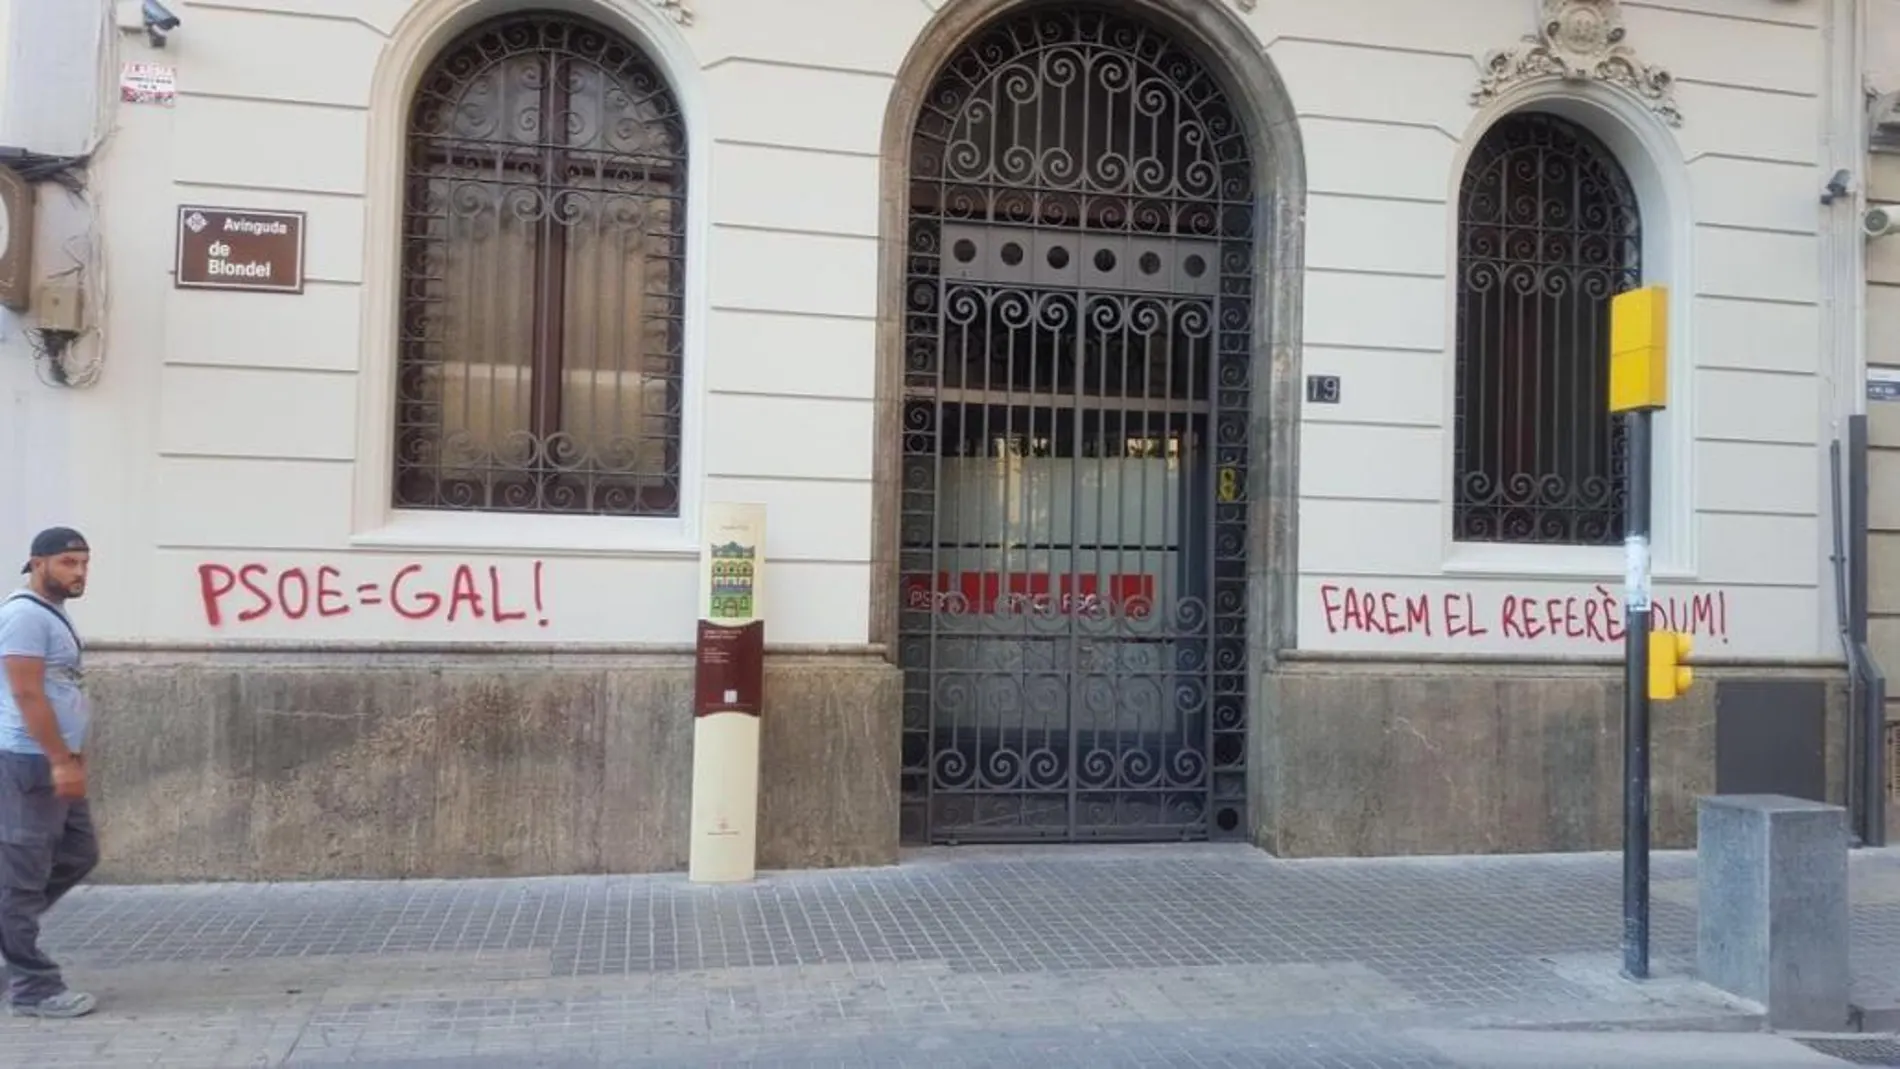 La fachada del PSC en Lérida amaneció con mensajes pintados en rojo como «Haremos el referéndum»